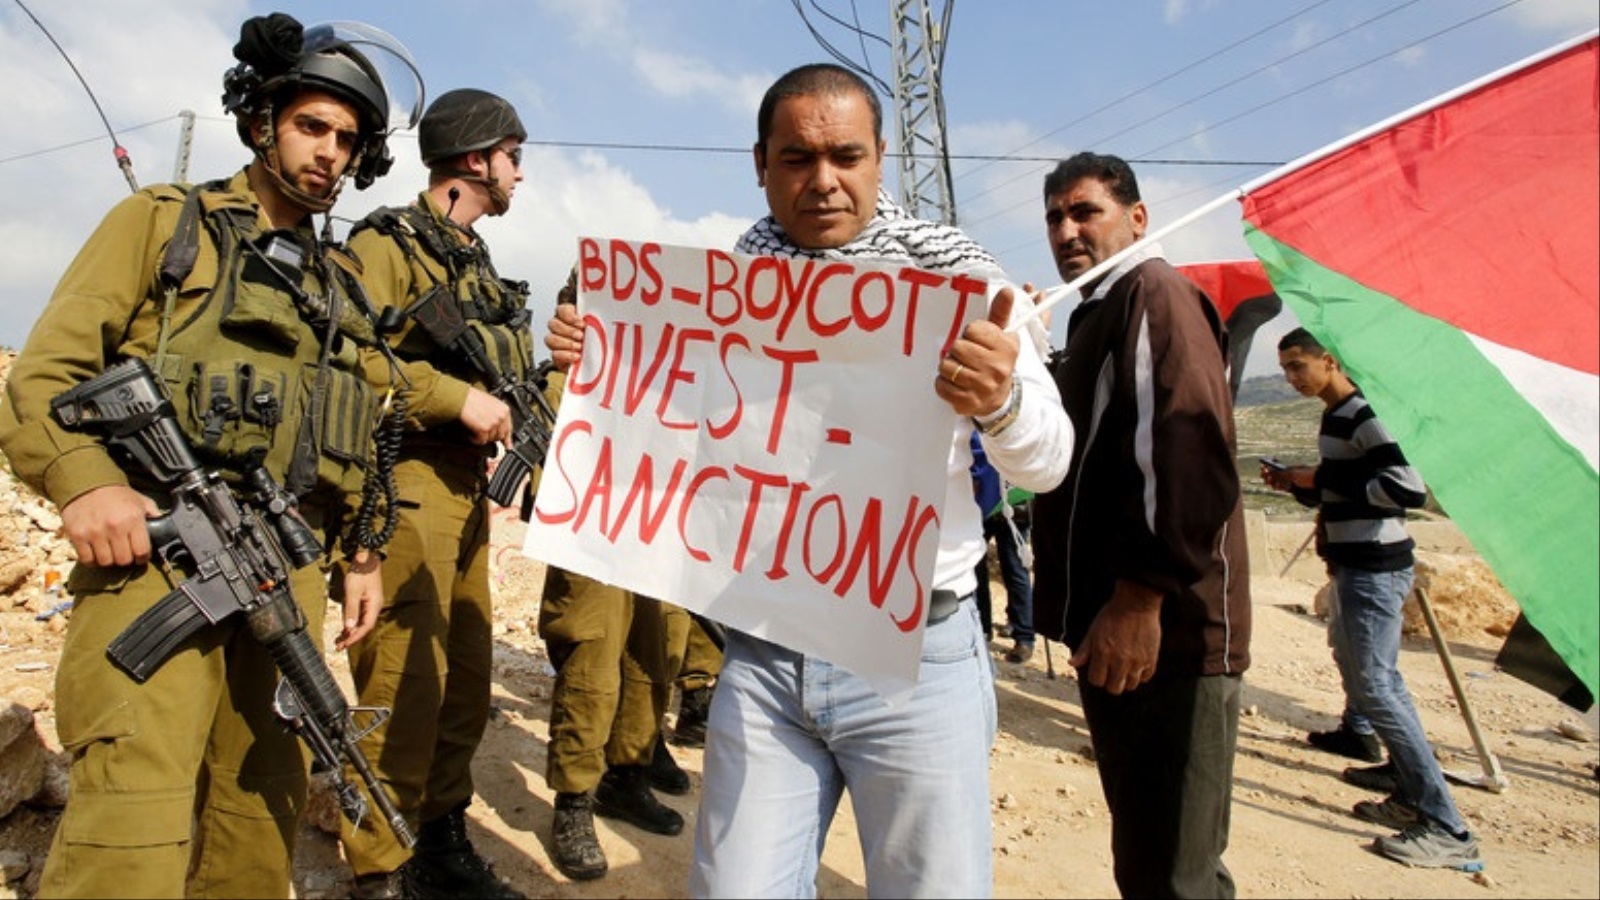 ‪احتجاجات فلسطينية سابقة تطالب بمقاطعة الاحتلال الإسرائيلي‬ (الأوروبية)